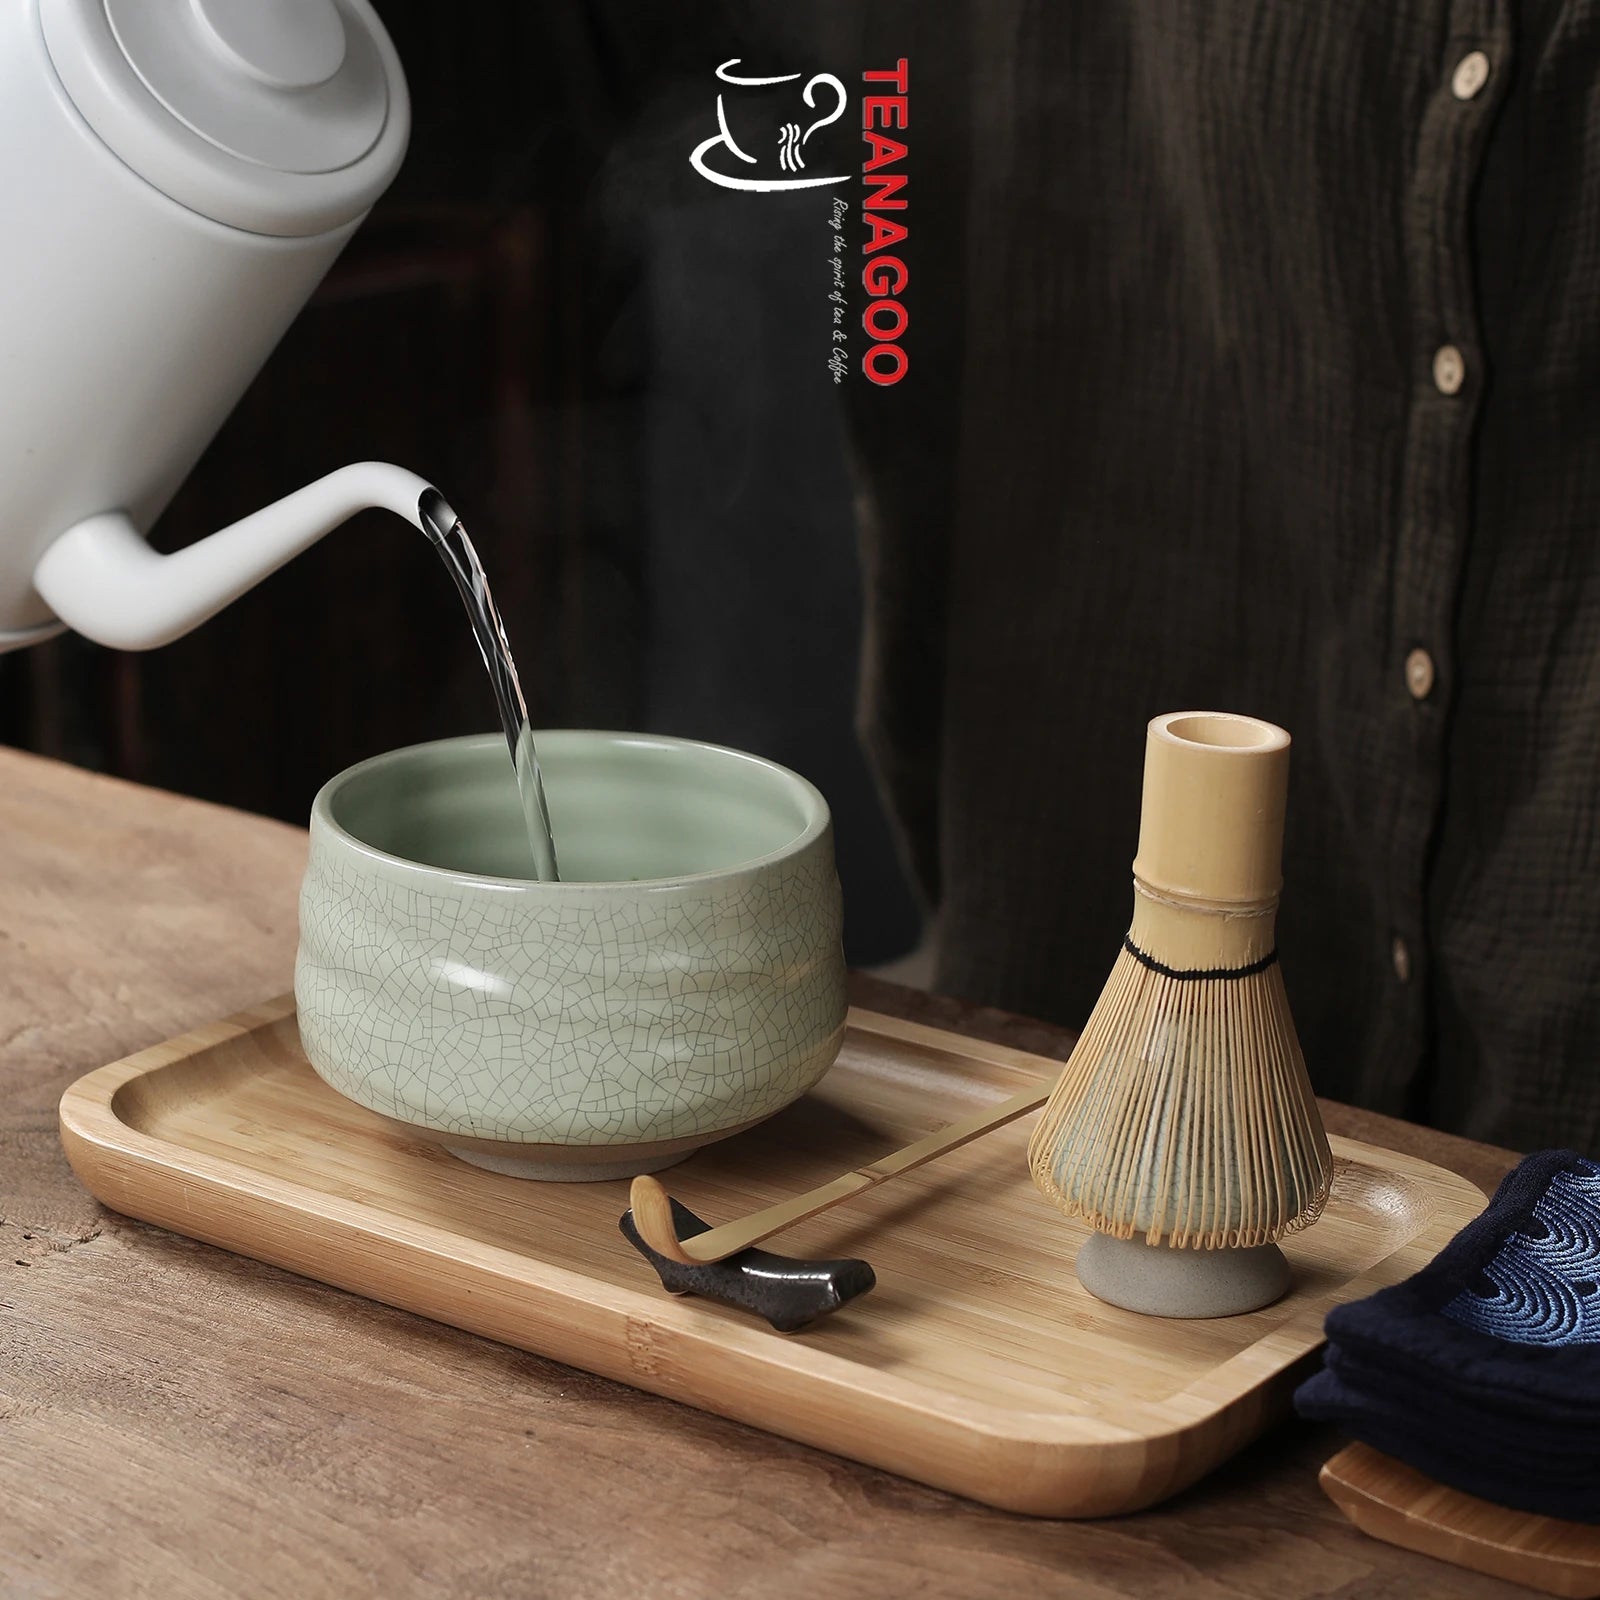 TEANAGOO Matcha Set Matcha Whisk Matcha Bowl with Pouring Spout Scoop  Matcha Whisk Holder Tea Making Kit. 1 japansk teuppsättning (7 st) + 2  koppar